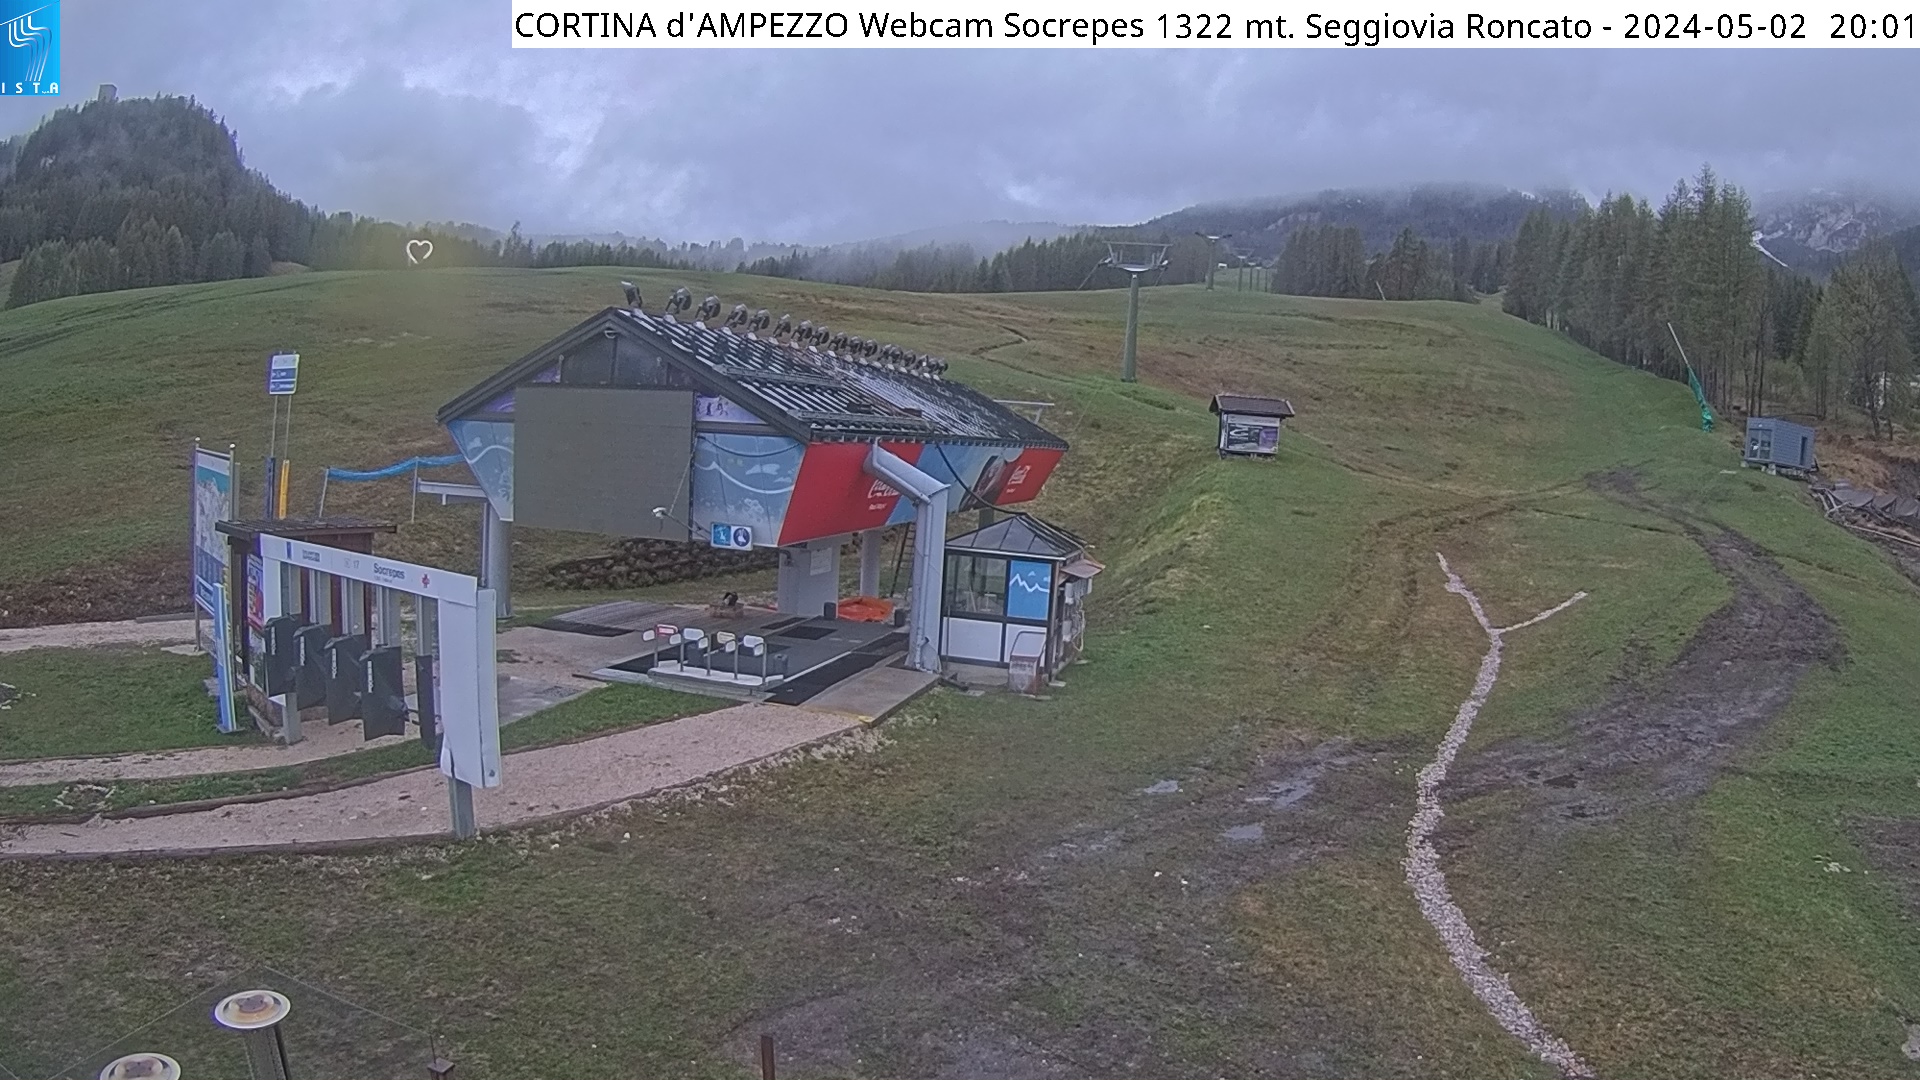 Cortina: Socrepes 1300m